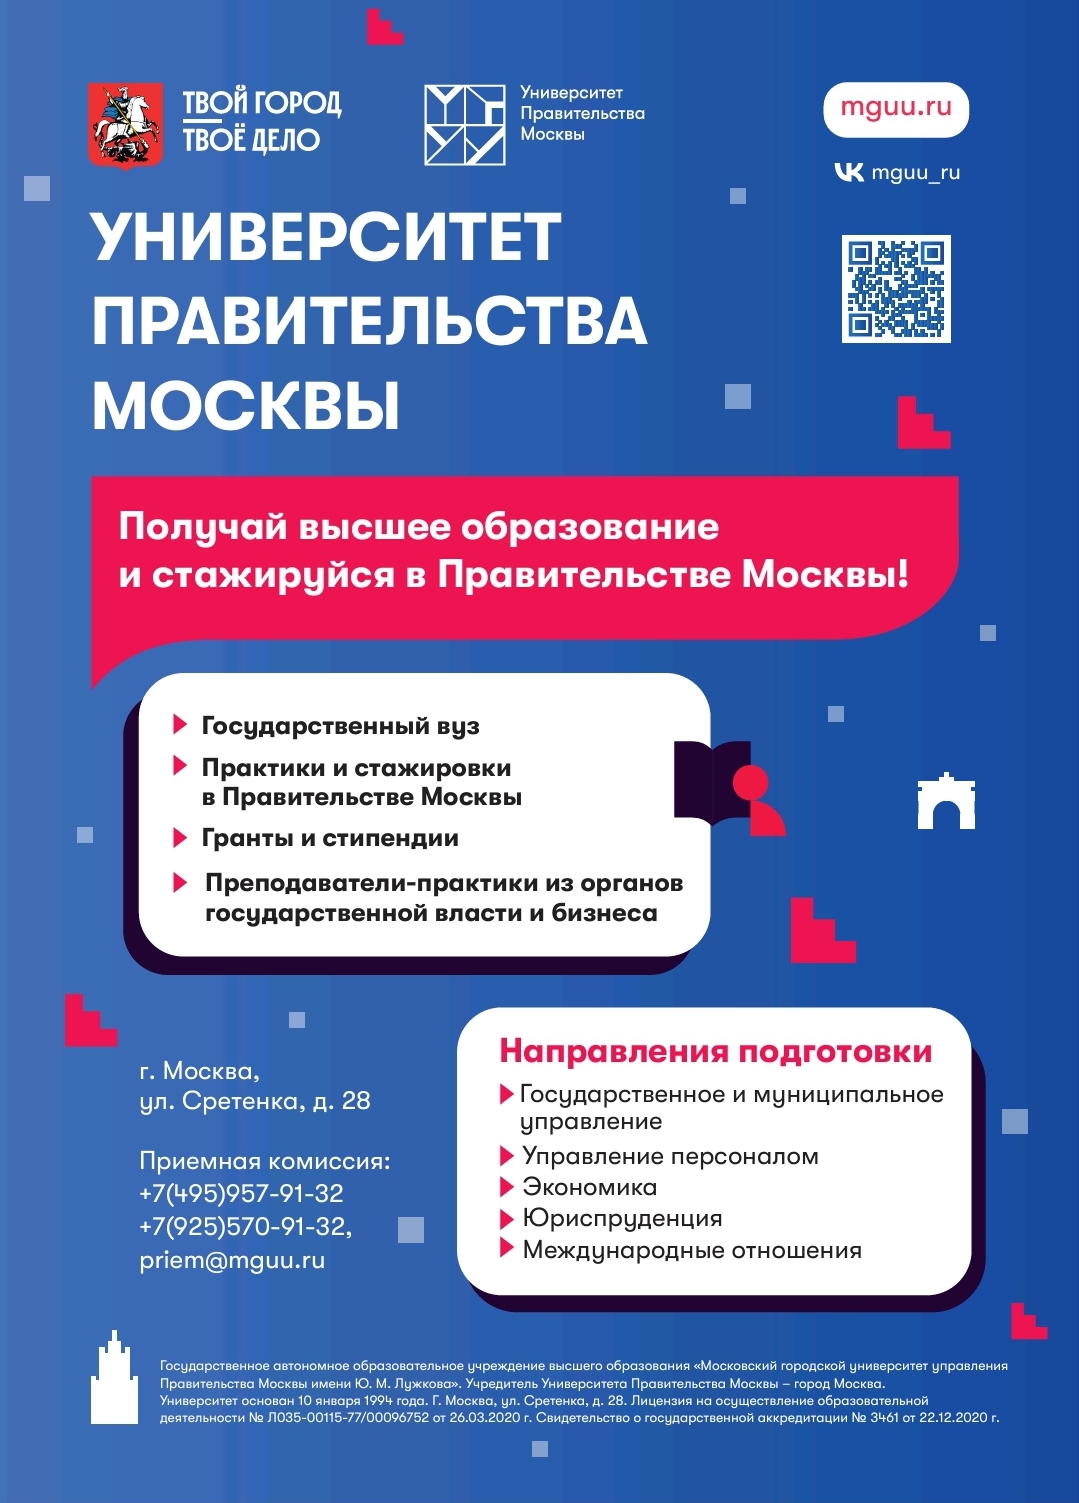 Онлайн-встреча посвящённая Университету Правительства Москвы.